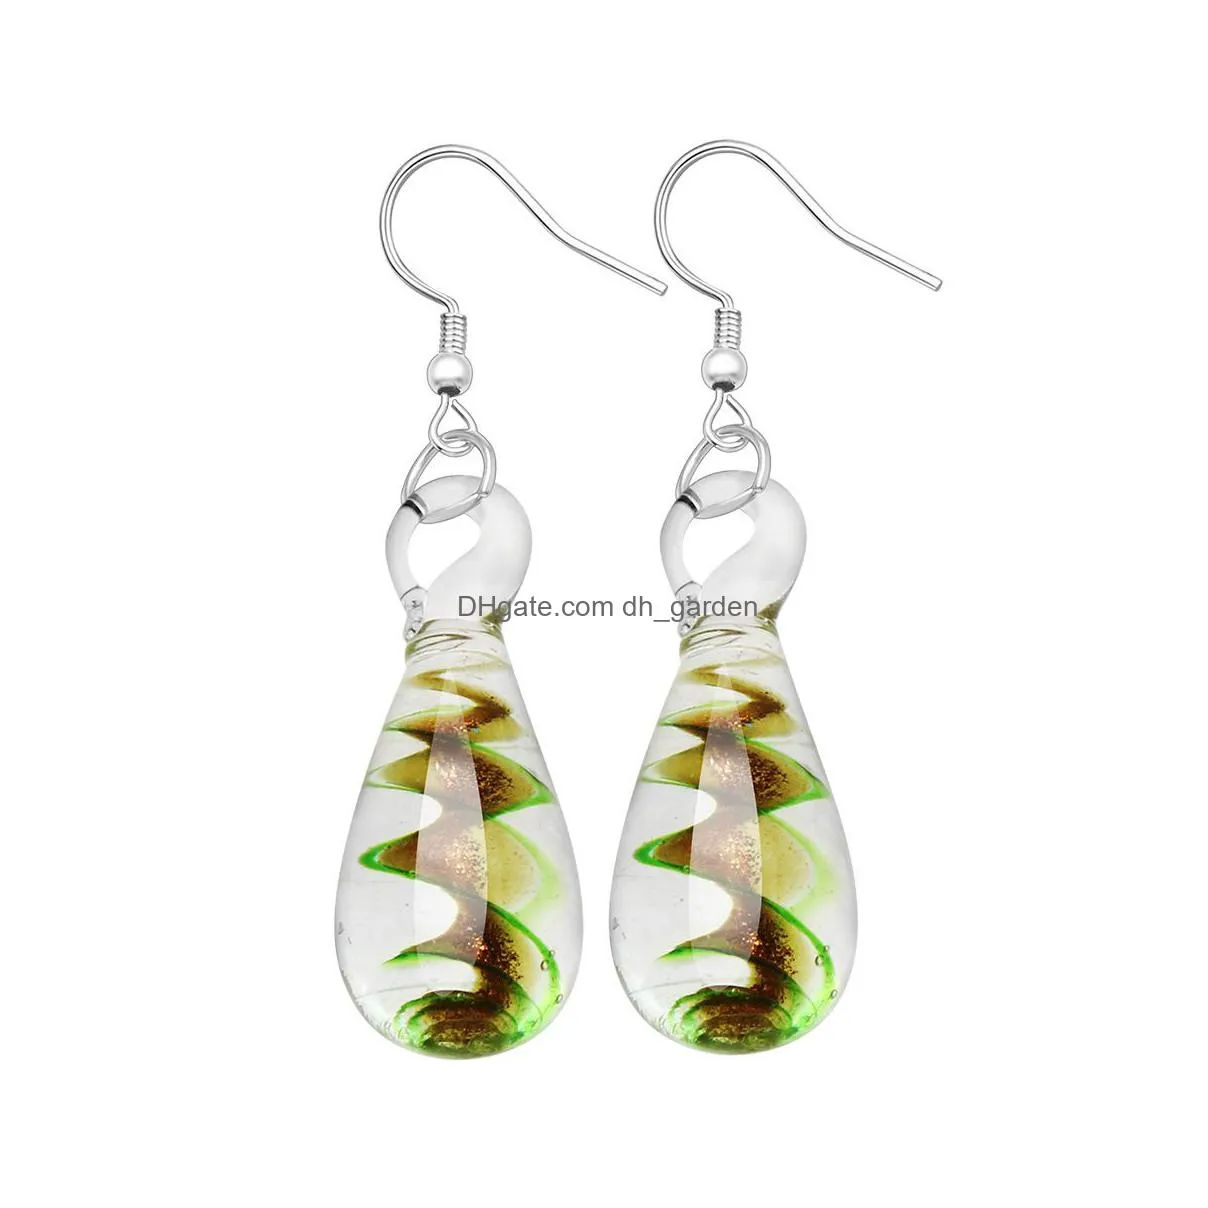 wholesale 1 pair flower water drop lampwork glass dangle earrings bead earring silver plated earring